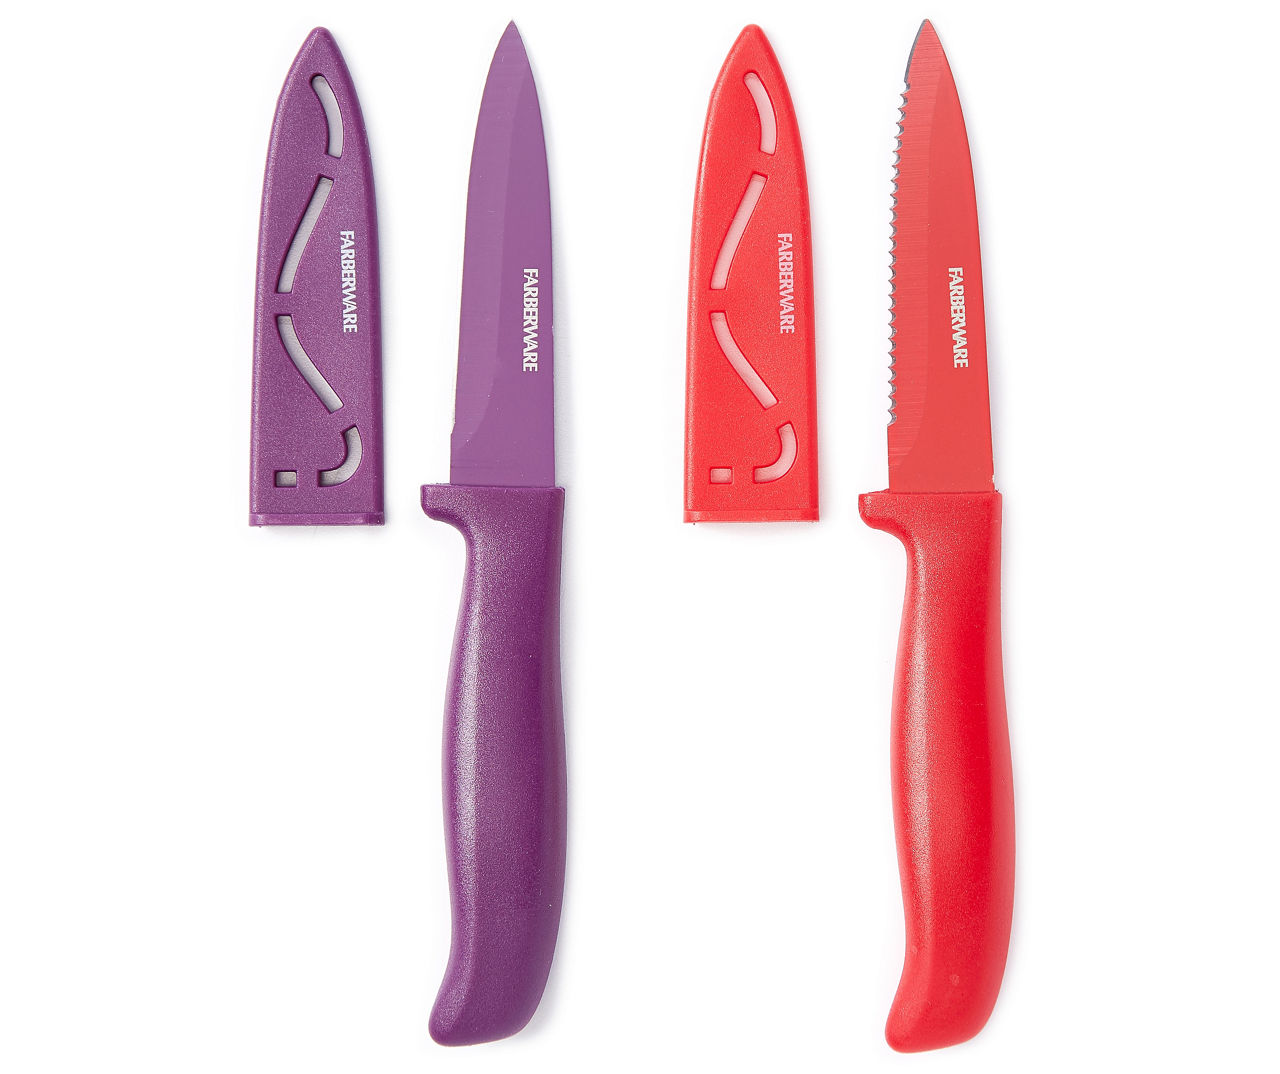 Buy Farberware Paring Knife Set